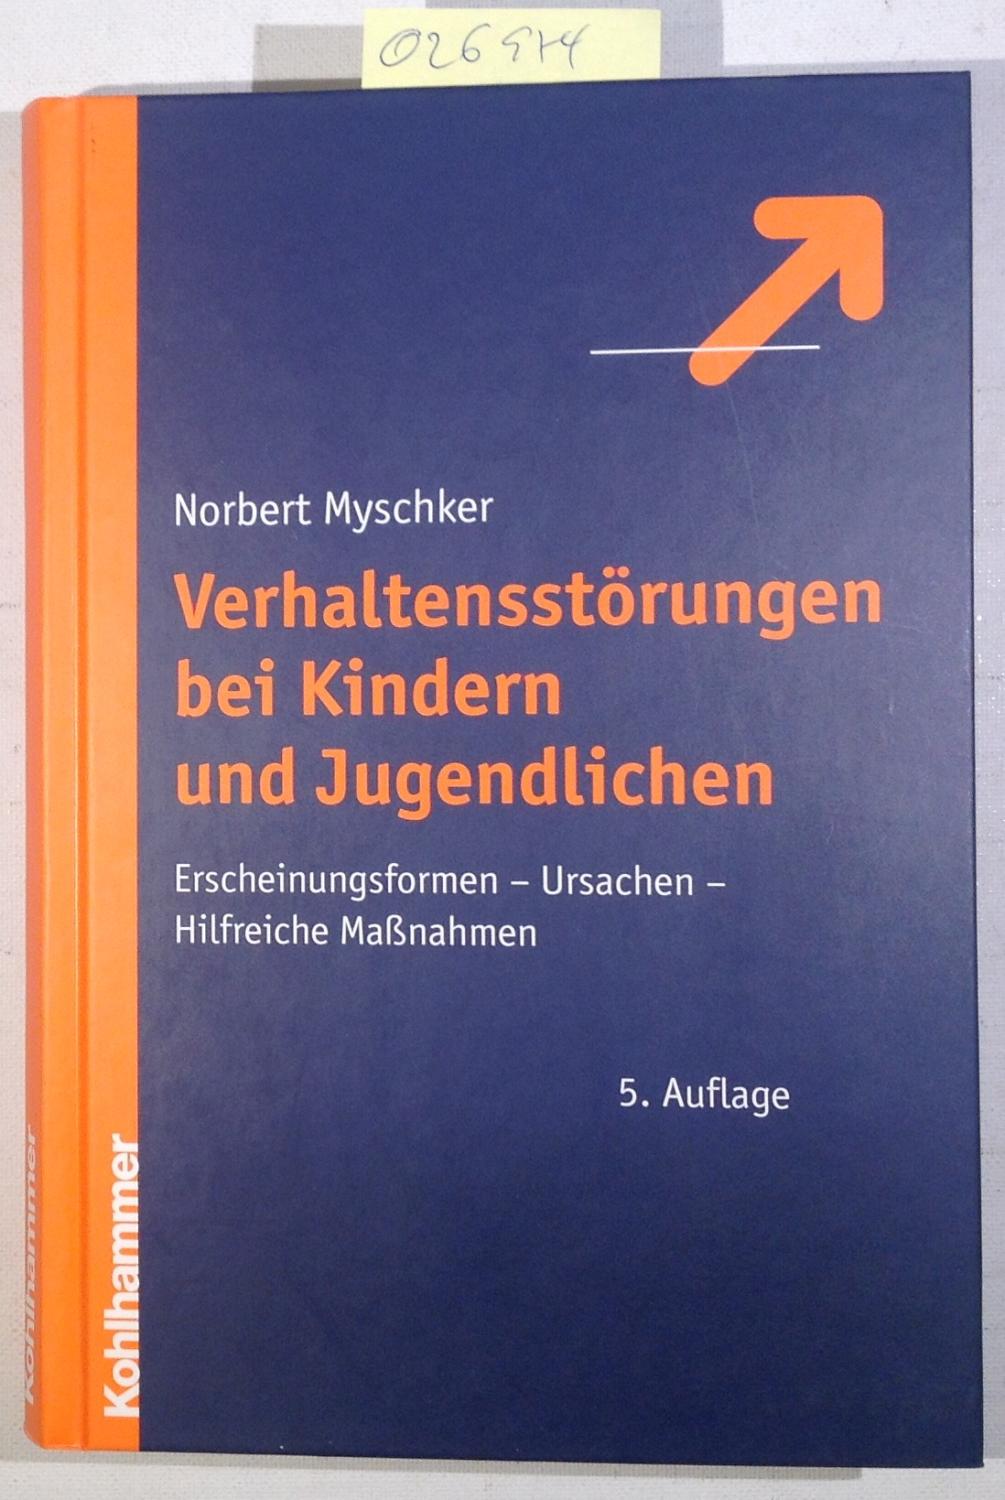 norbert myschker - ZVAB